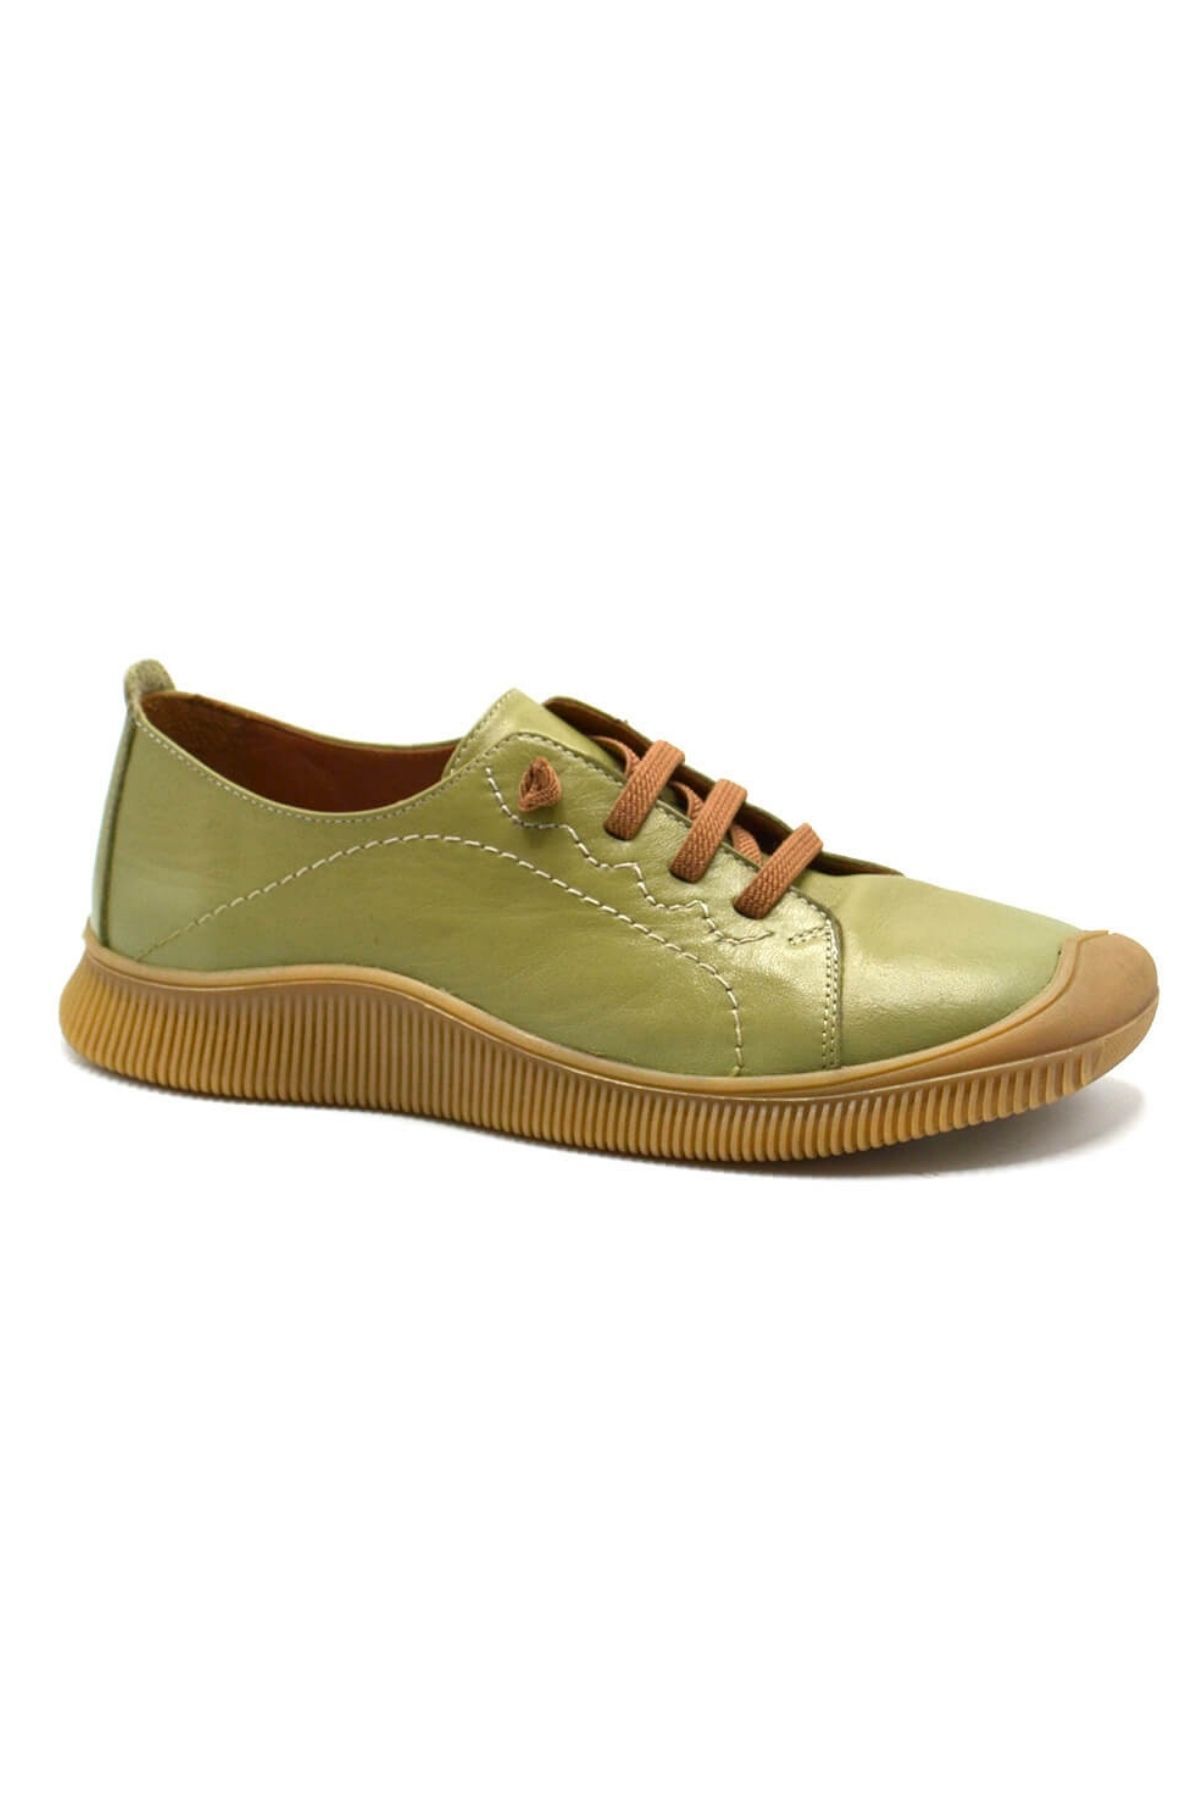 Venüs Kadın Comfort Deri Ayakkabı Yeşil 2413504Y